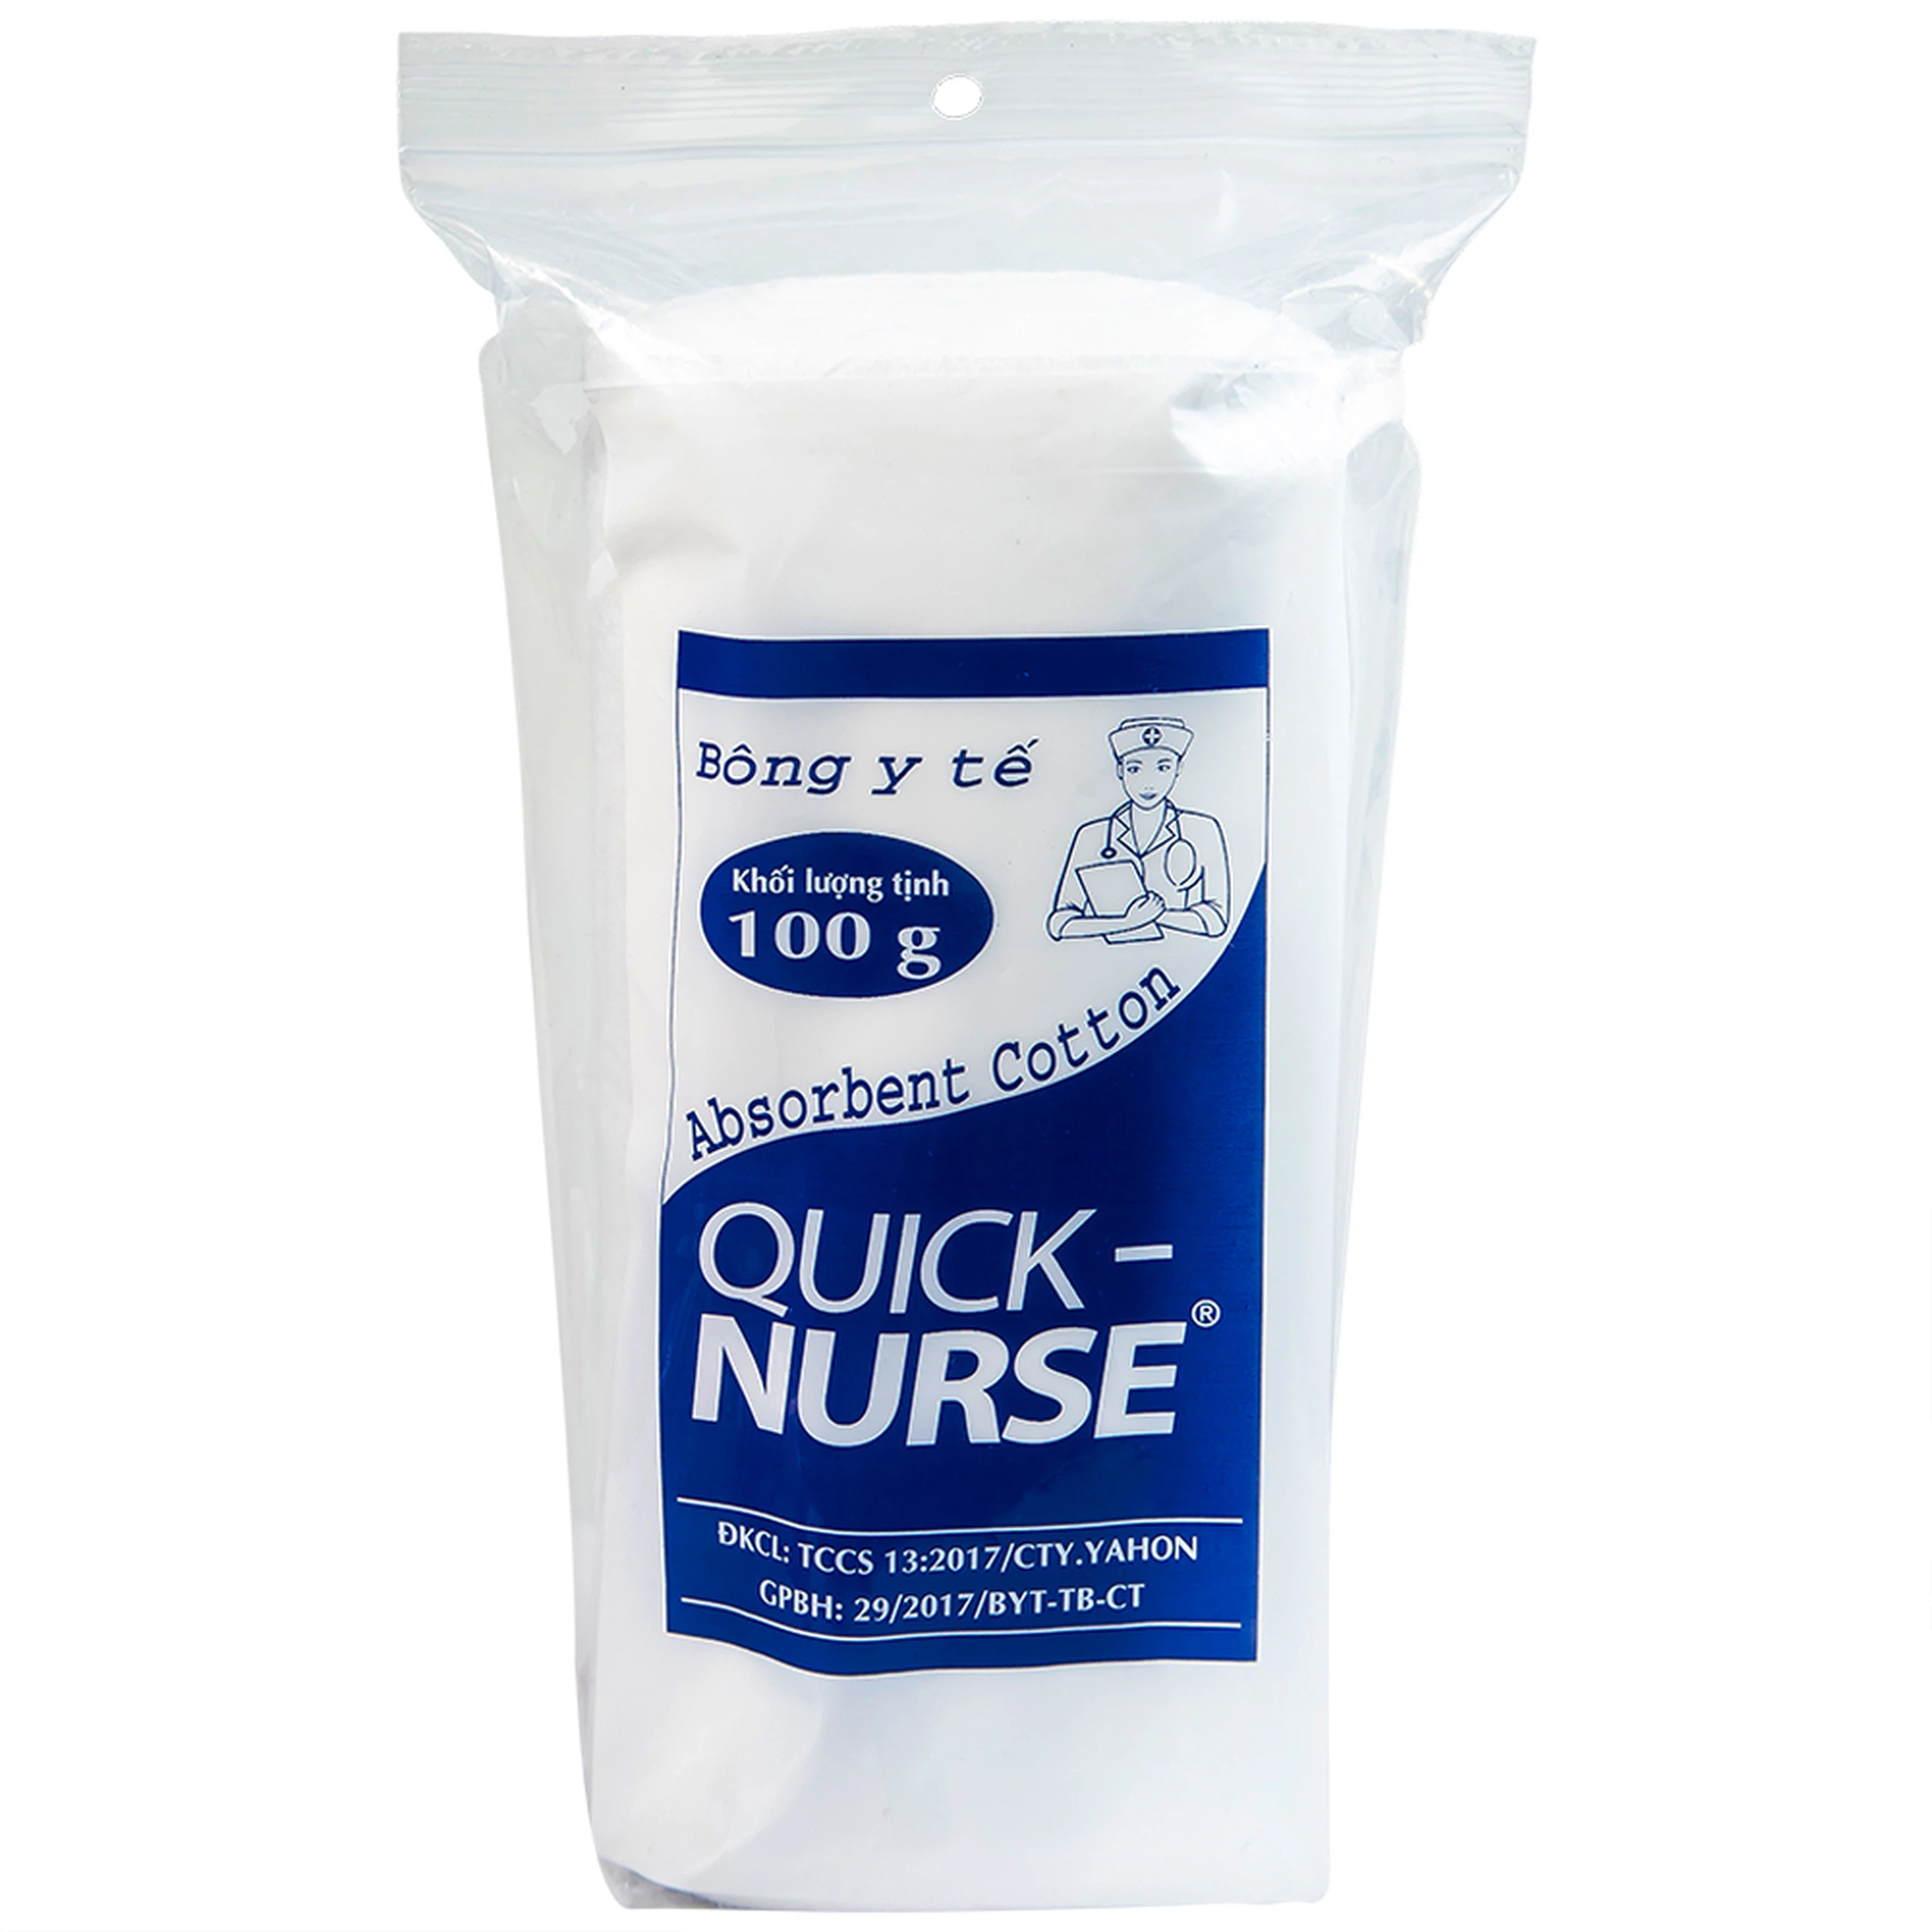 Bông y tế Quick Nurse 100g dùng cho vết thương ngoài da, sát trùng, vệ sinh cho bé (Gói)